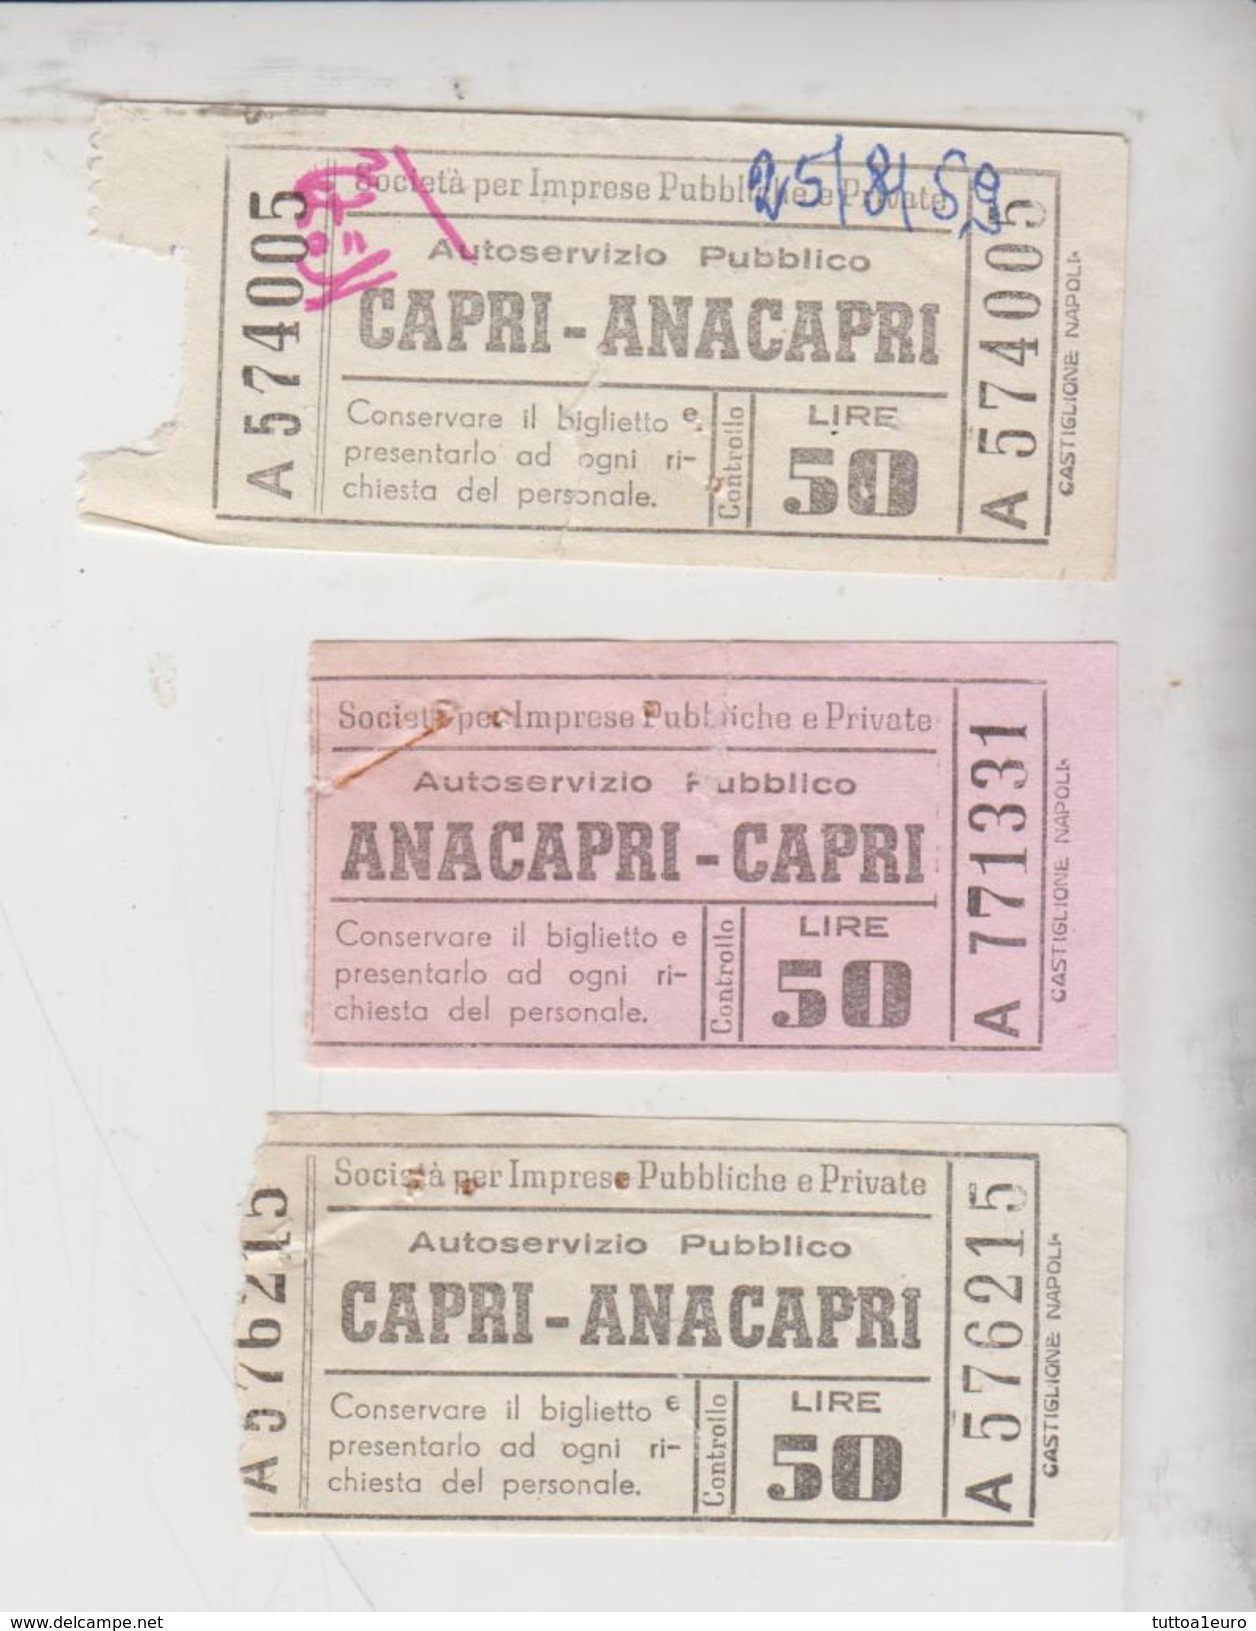 Capri Anacapri Ticket Biglietto Buillet Soc. Imprese Pubbl. Private 1959  Gg - Europa